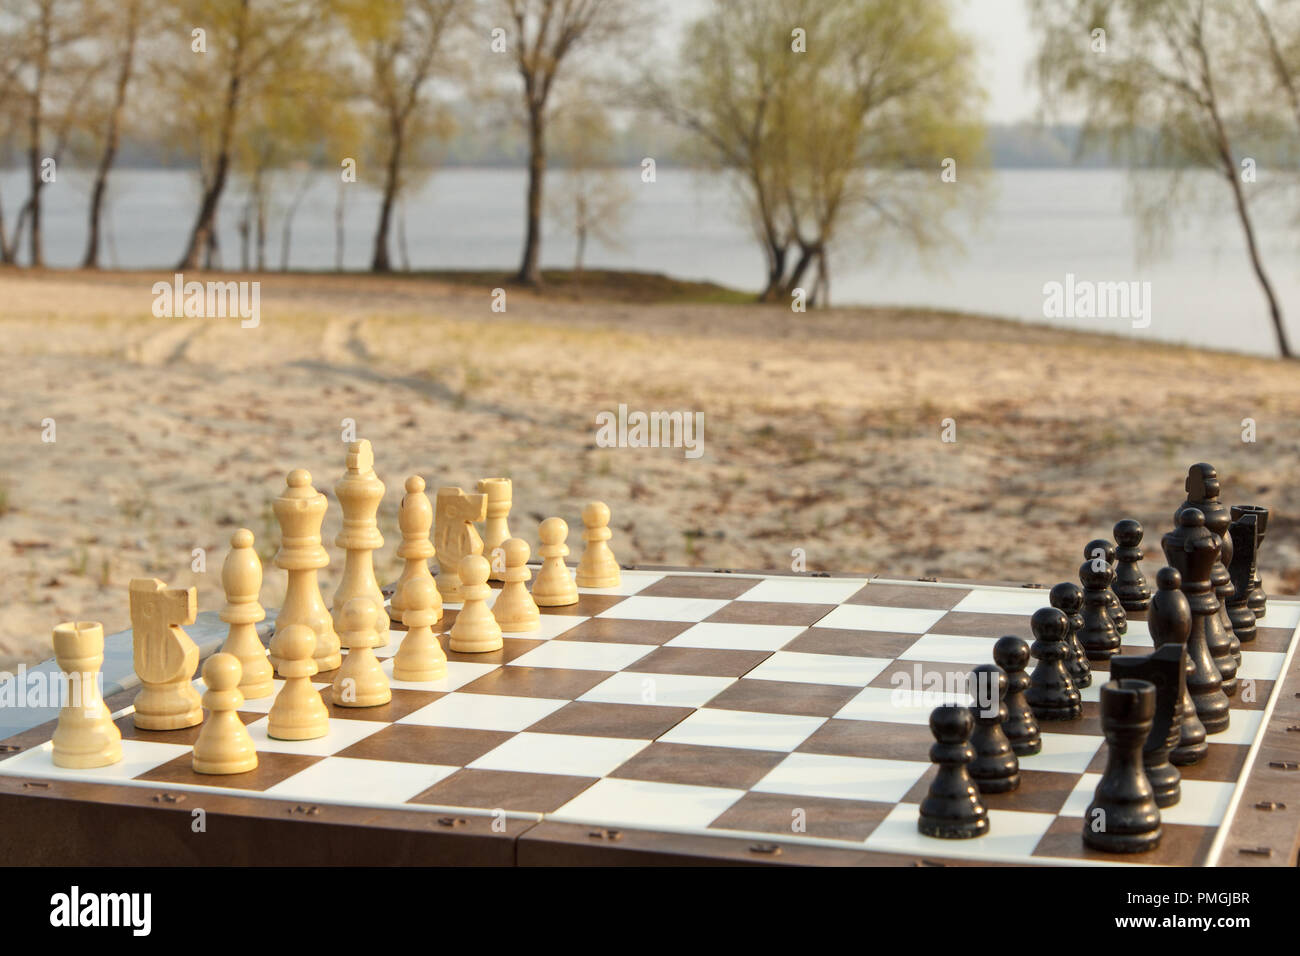 Conseil d'échecs avec pièces d'échecs sur River Embankment. Jeu d'extérieur en bois avec pièces d'échecs Banque D'Images